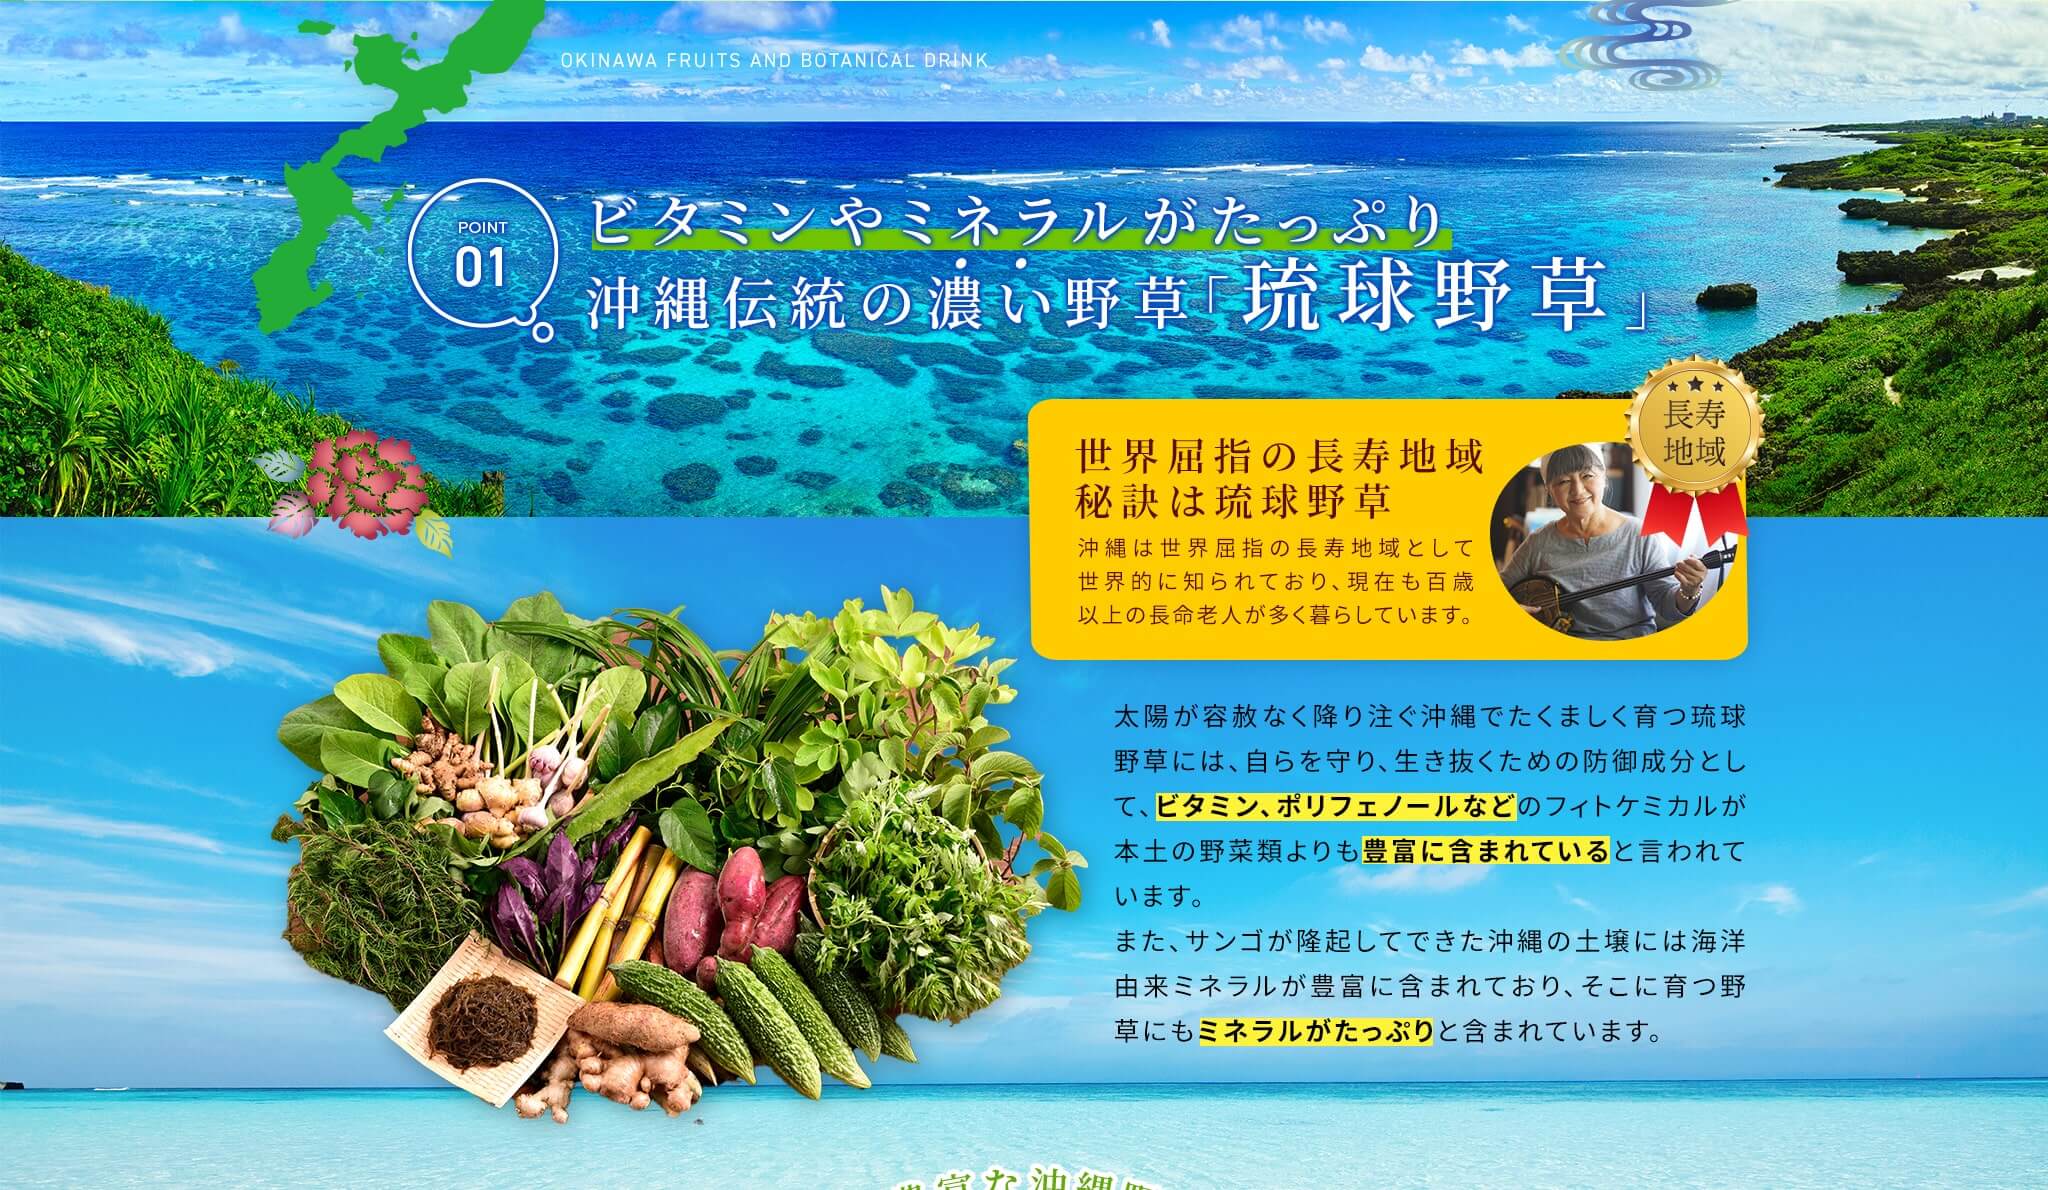 POINT01ビタミンやミネラルがたっぷり沖縄伝統の濃い野草｢琉球野草｣太陽が容赦なく降り注ぐ沖縄でたくましく育つ琉球野草には、自らを守り、生き抜くための防御成分として、ビタミン、ポリフェノールなどのフィトケミカルが本土の野菜類よりも豊富に含まれていると言われています。また、サンゴが隆起してできた沖縄の土壌には海洋由来ミネラルが豊富に含まれており、そこに育つ野草にもミネラルがたっぷりと含まれています。世界屈指の長寿地域 秘訣は琉球野草 沖縄は世界屈指の長寿地域として世界的に知られており、現在も百歳以上の長命老人が多く暮らしています。